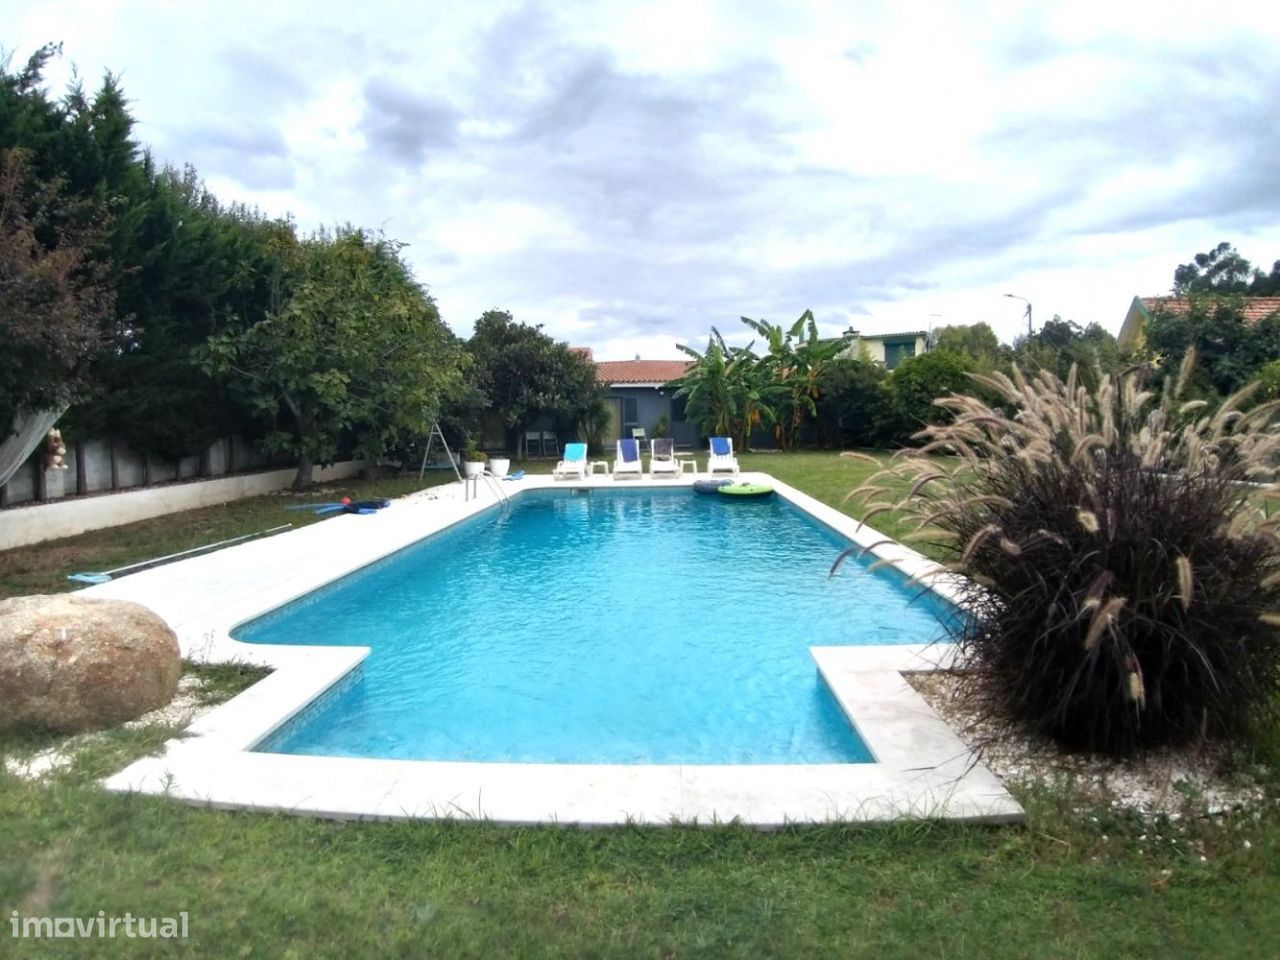 Moradia T3 com piscina em Canidelo - Vila Nova de Gaia